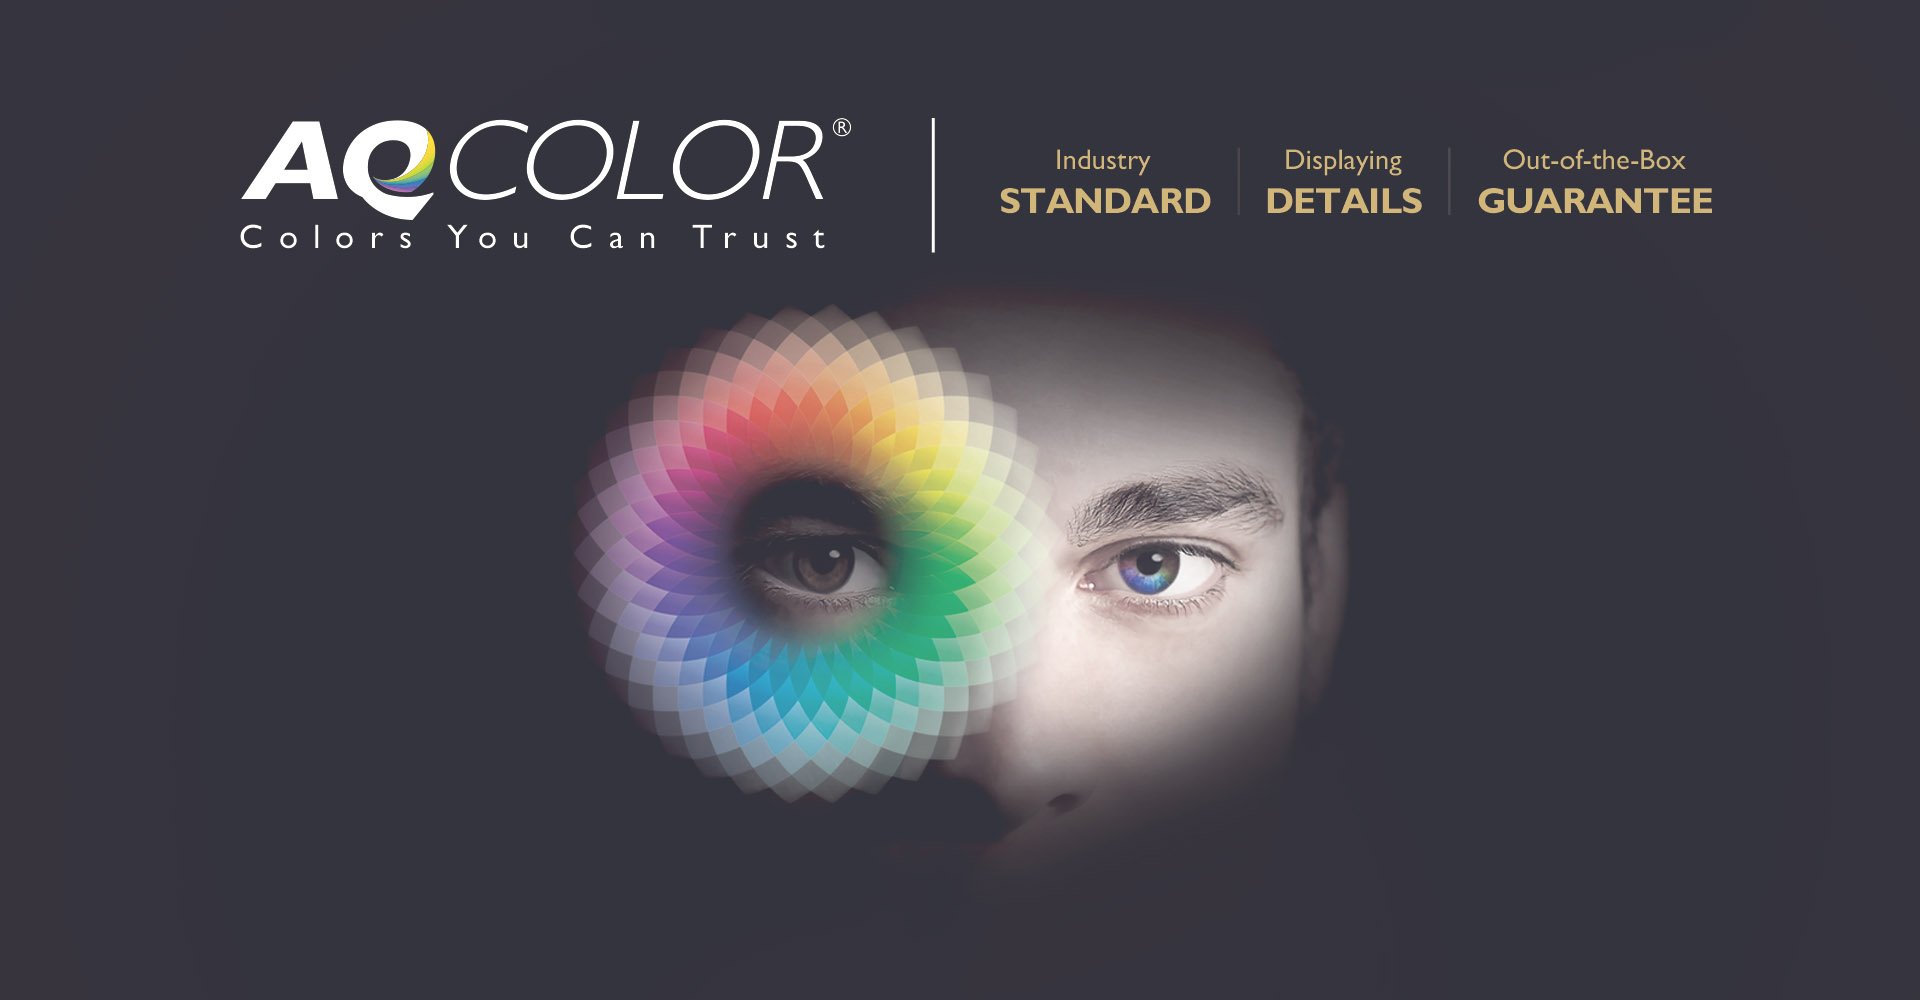 De BenQ AQCOLOR technologie creëert nieuwe dimensies in fotobewerking en maximale kleurprecisie voor levensechte kleuren.